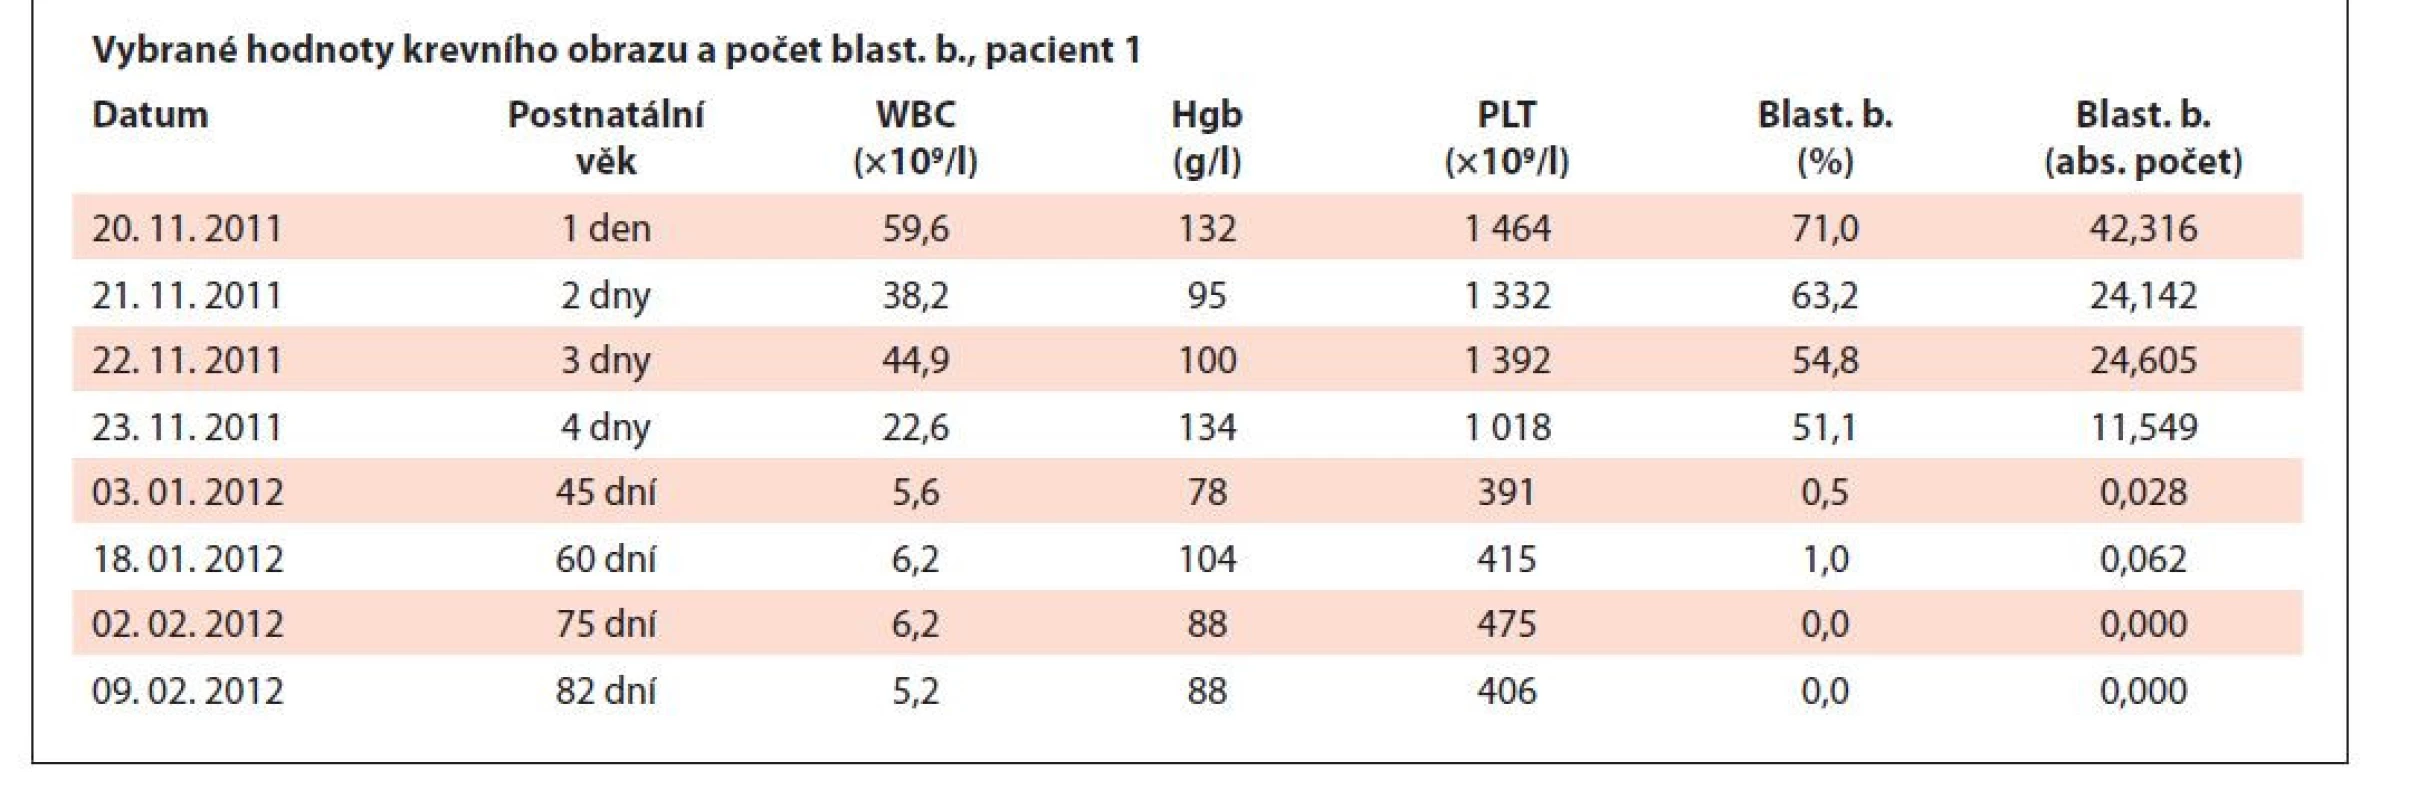 Vybrané hodnoty krevního obrazu a počet blastických buněk, pacient 2.